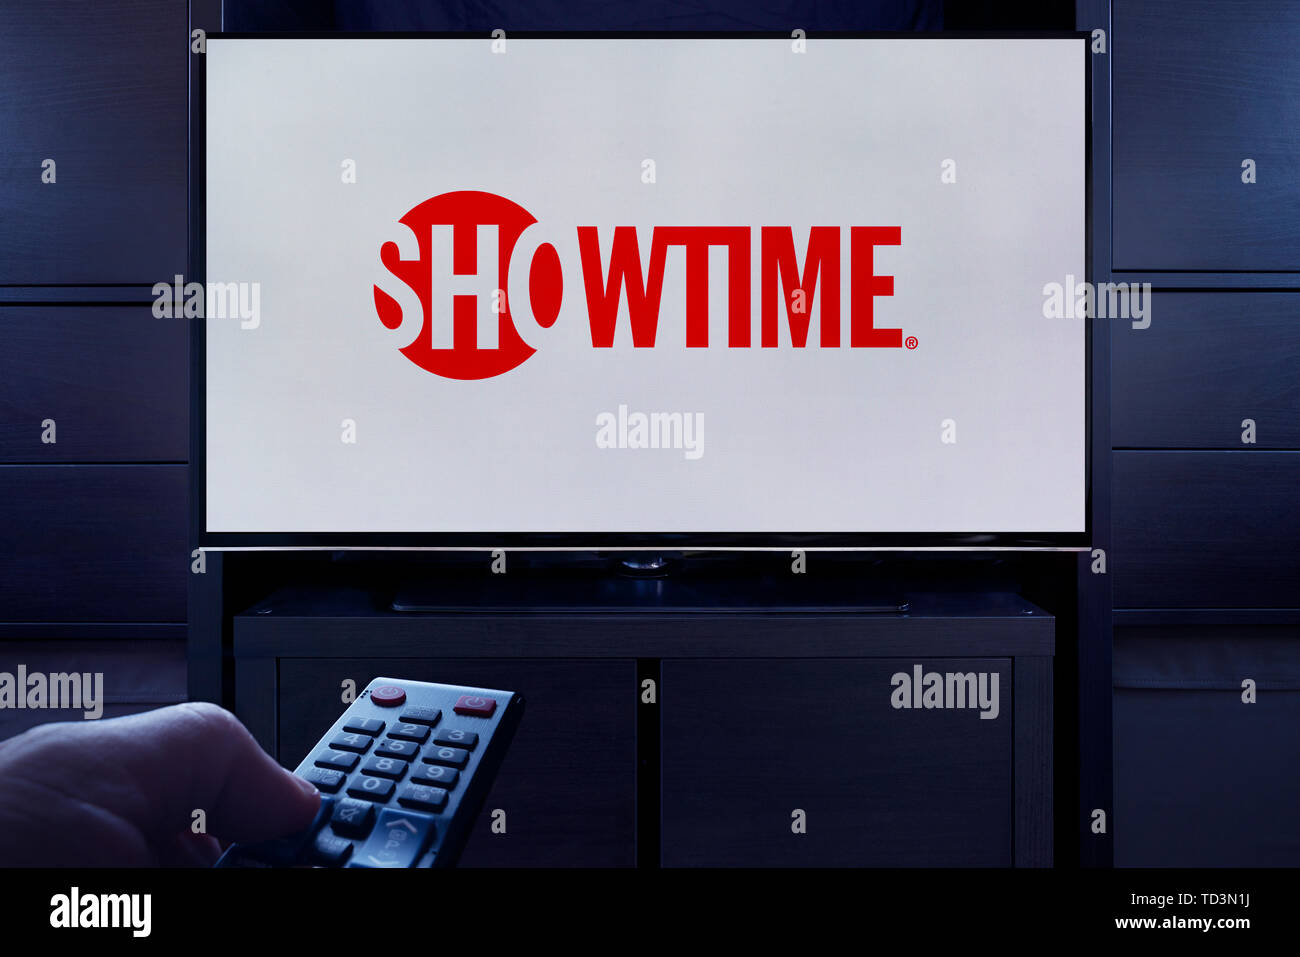 Un homme d'un points TV remote à la télévision qui affiche le logo de l'Showtime sur demande video streaming service (usage éditorial uniquement). Banque D'Images